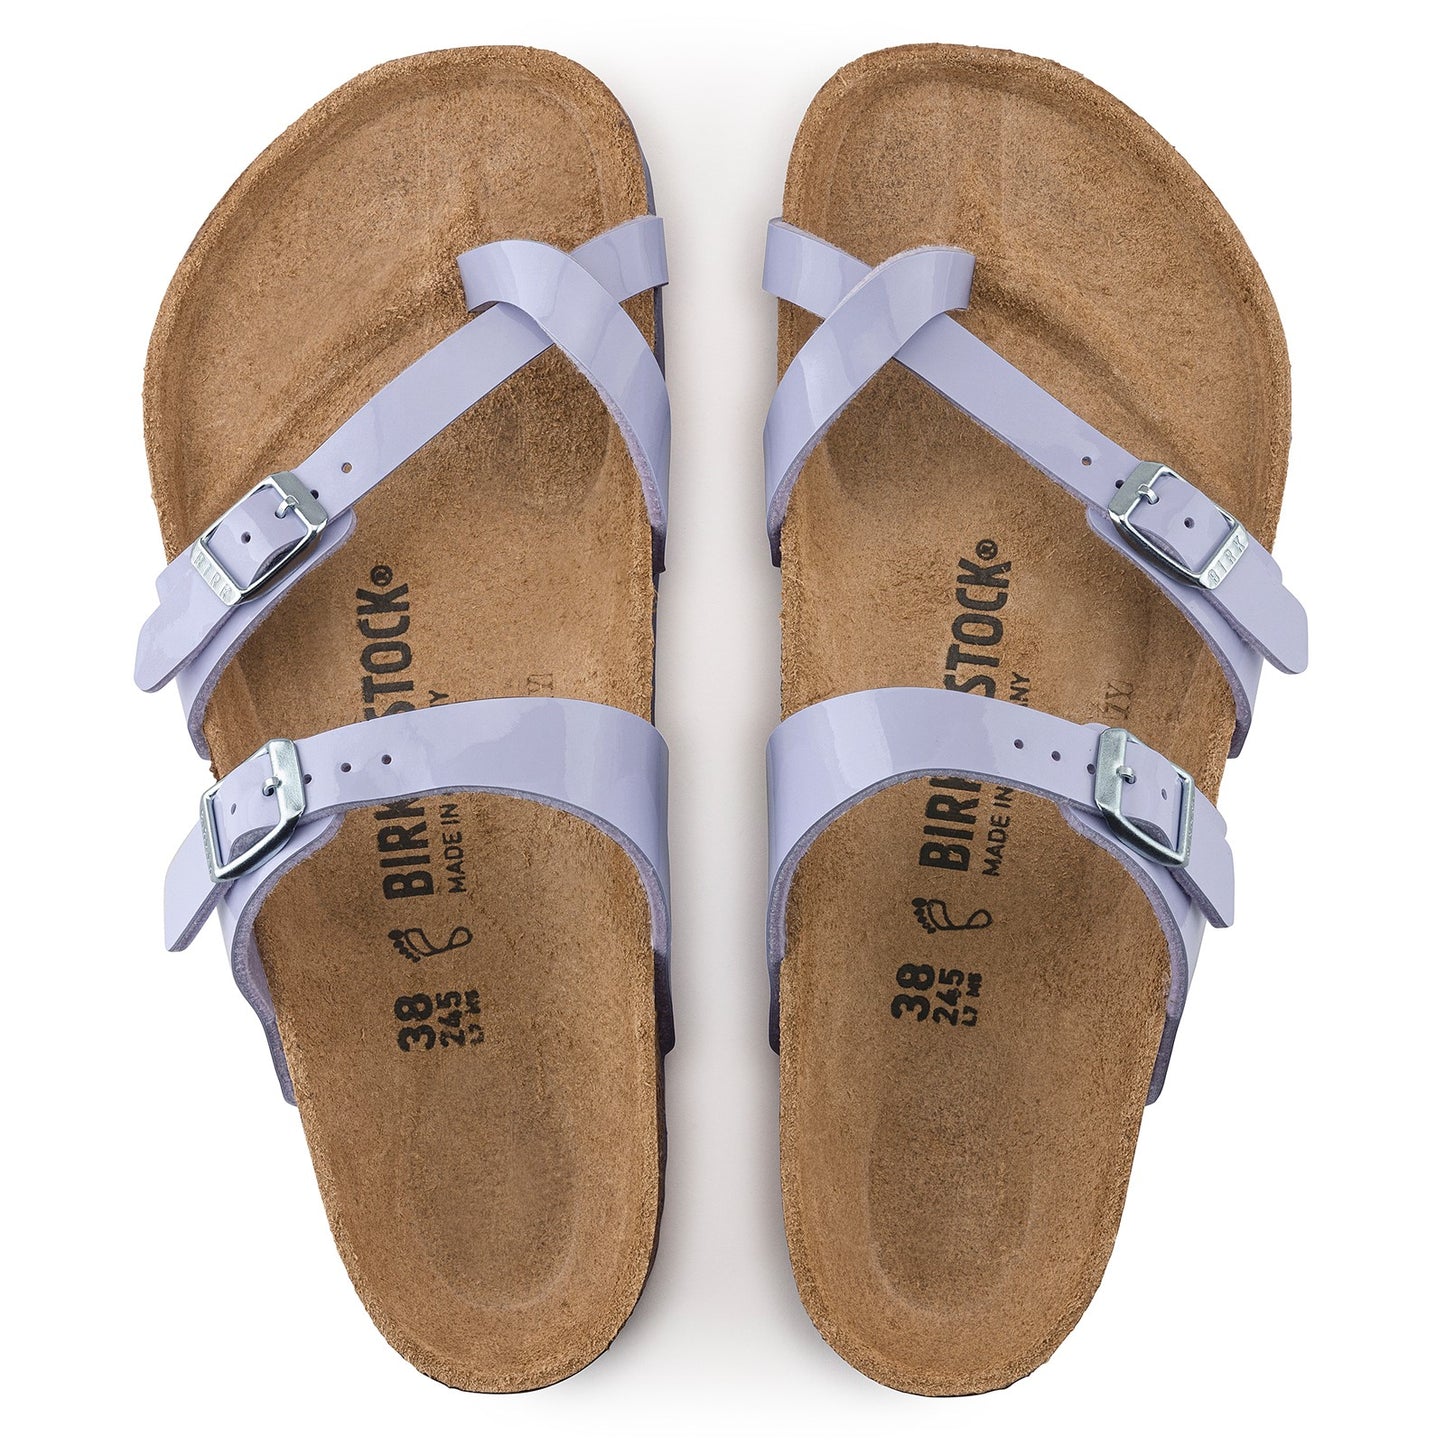 Peltz Shoes  Women's Birkenstock Mayari Sandal - Regular Width DUSTY PURPLE 1021 441 R